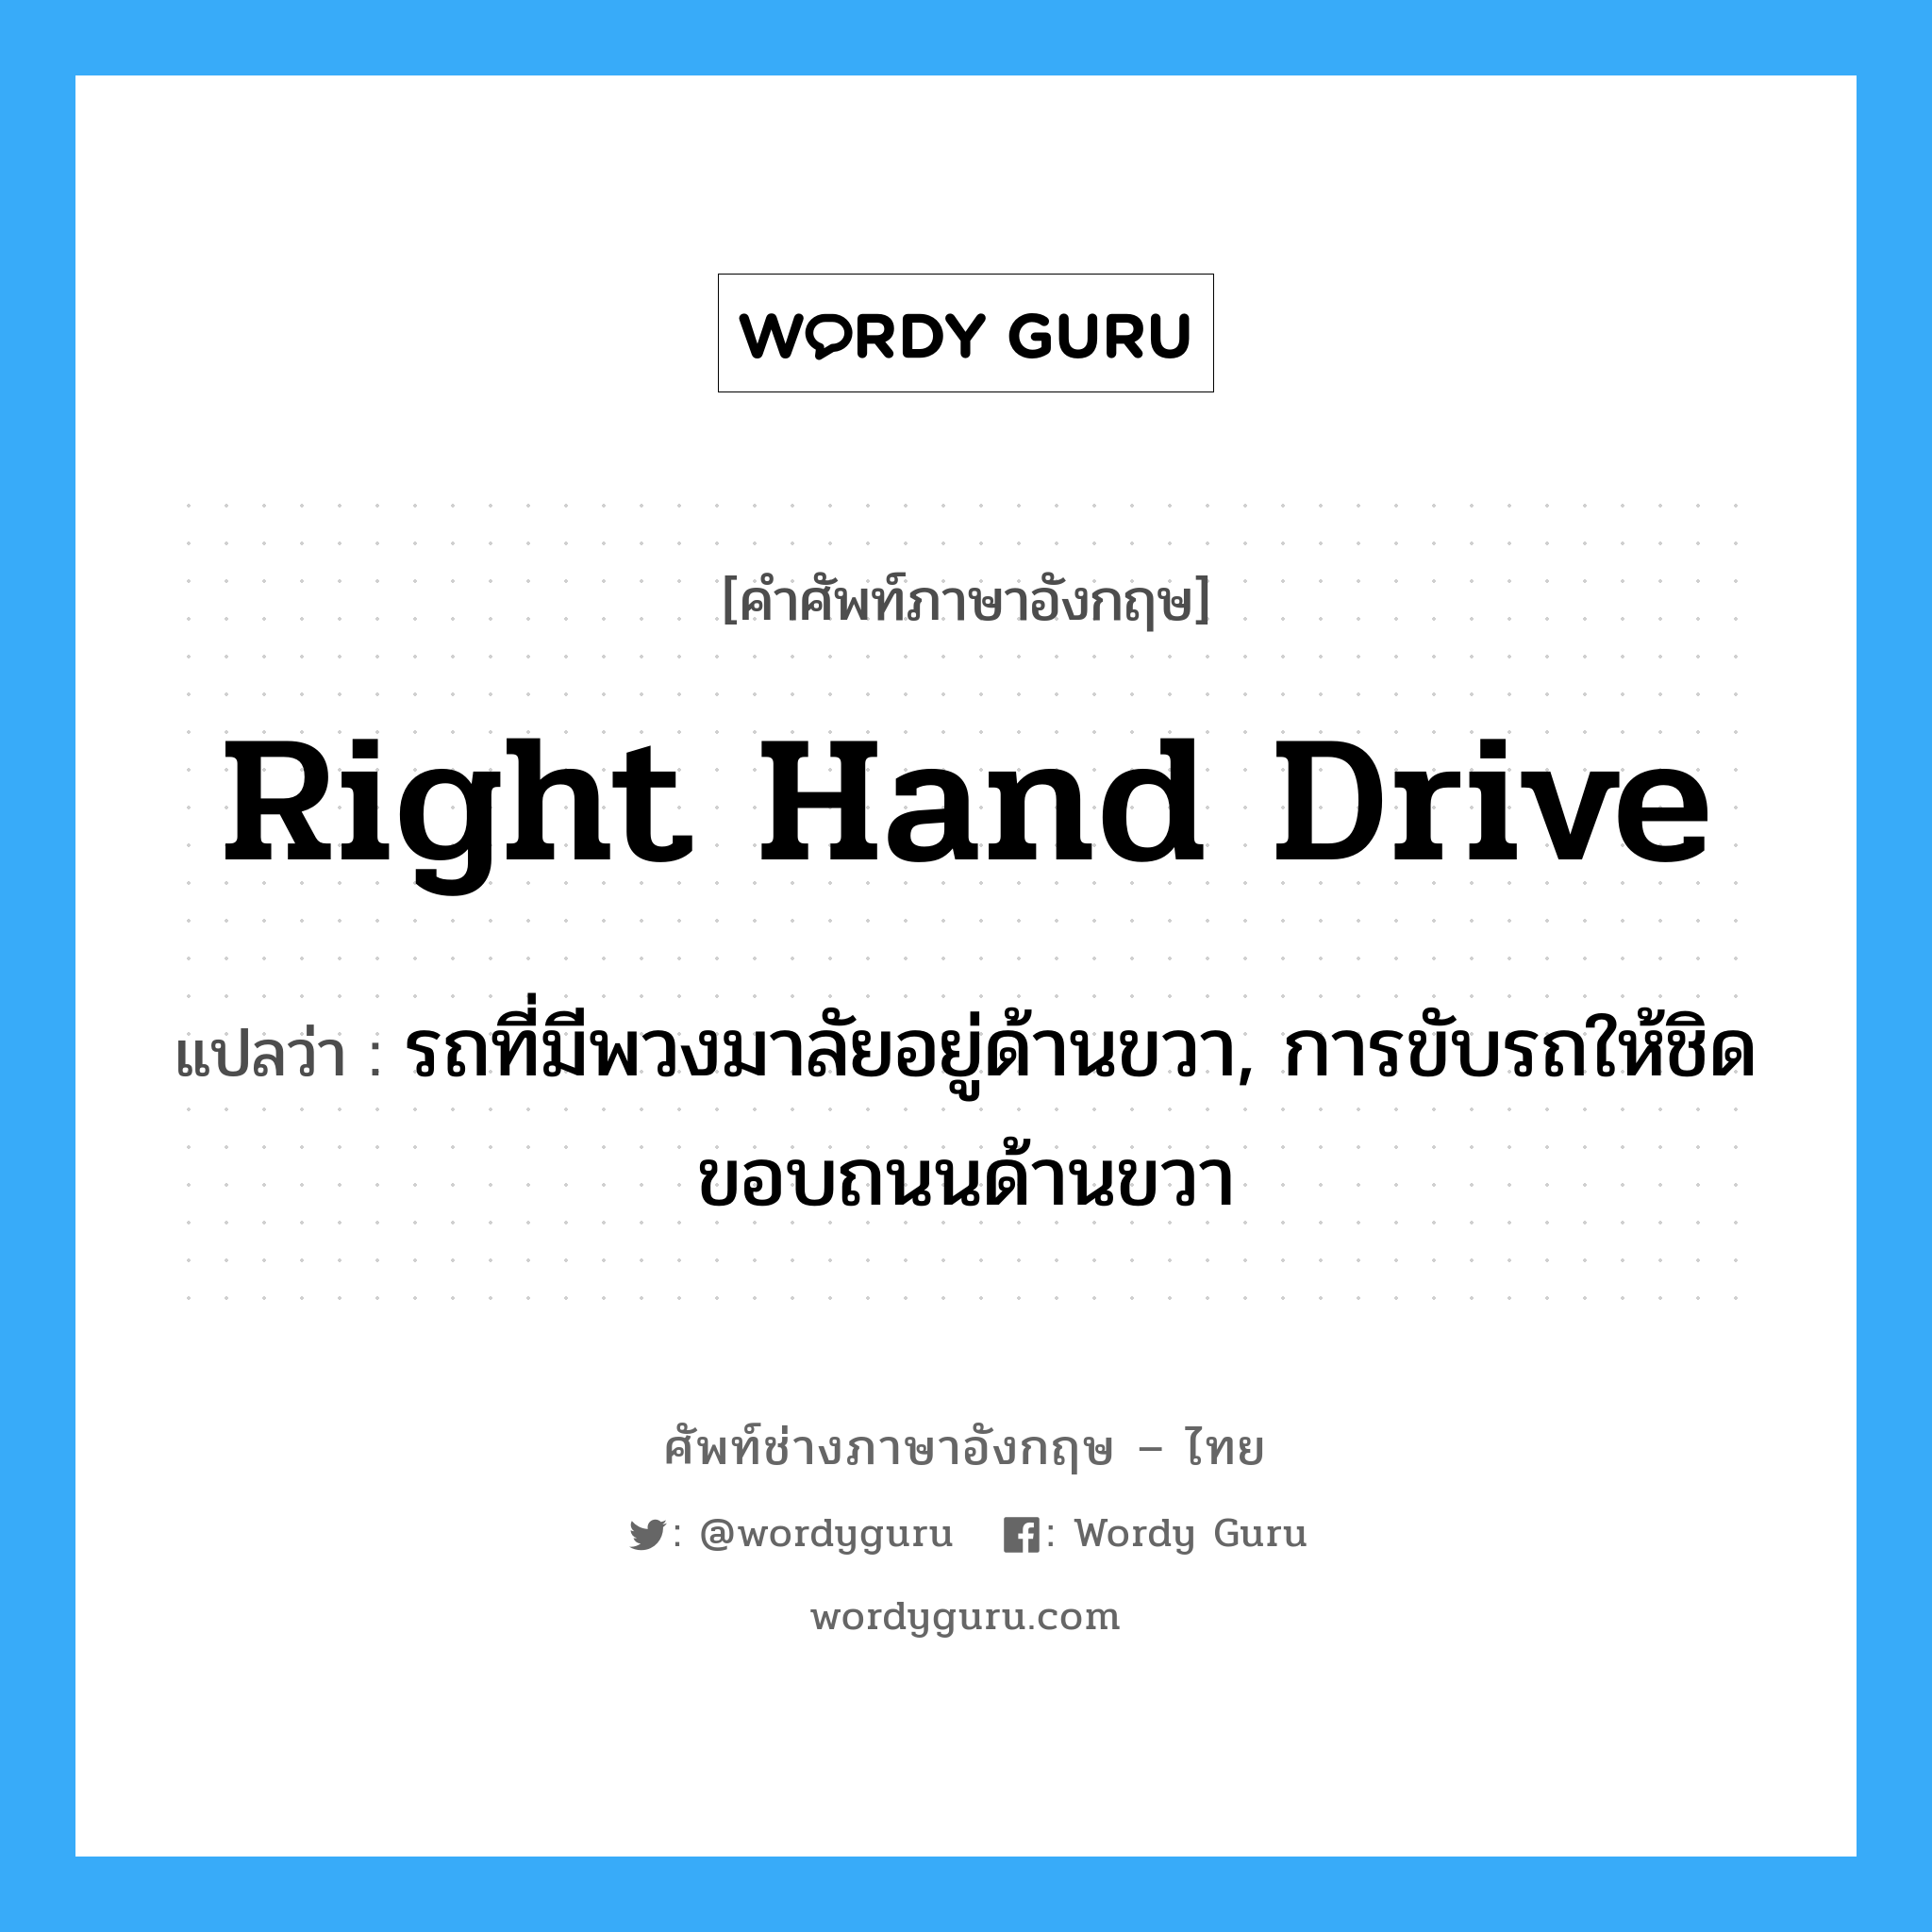 right hand drive แปลว่า?, คำศัพท์ช่างภาษาอังกฤษ - ไทย right hand drive คำศัพท์ภาษาอังกฤษ right hand drive แปลว่า รถที่มีพวงมาลัยอยู่ด้านขวา, การขับรถให้ชิดขอบถนนด้านขวา